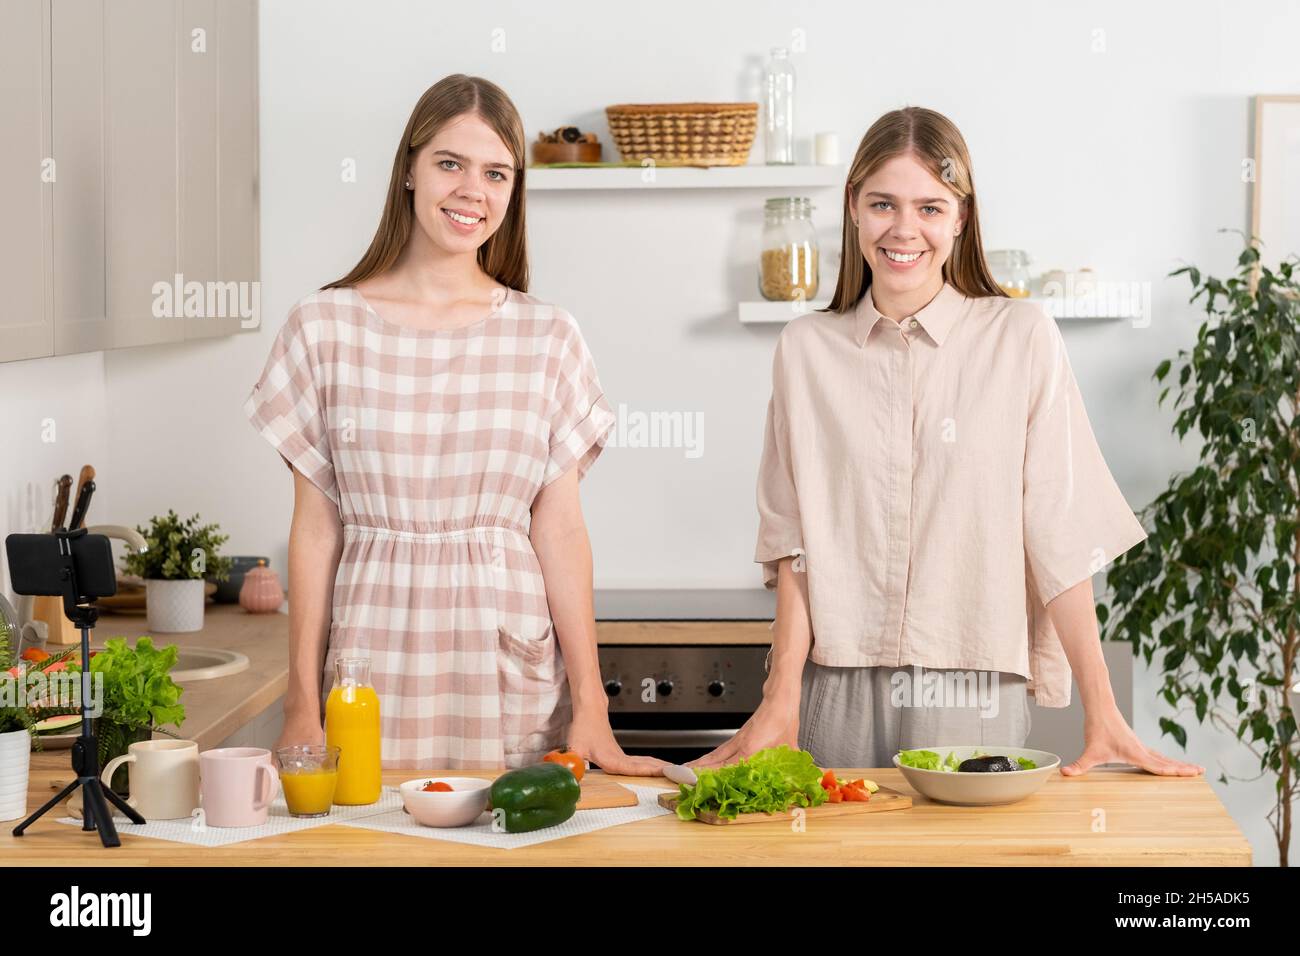 Glückliche junge Zwillingsschwestern in Casualwear, die am Küchentisch stehen und die Kamera betrachten, während sie vegetarisches Essen kochen Stockfoto